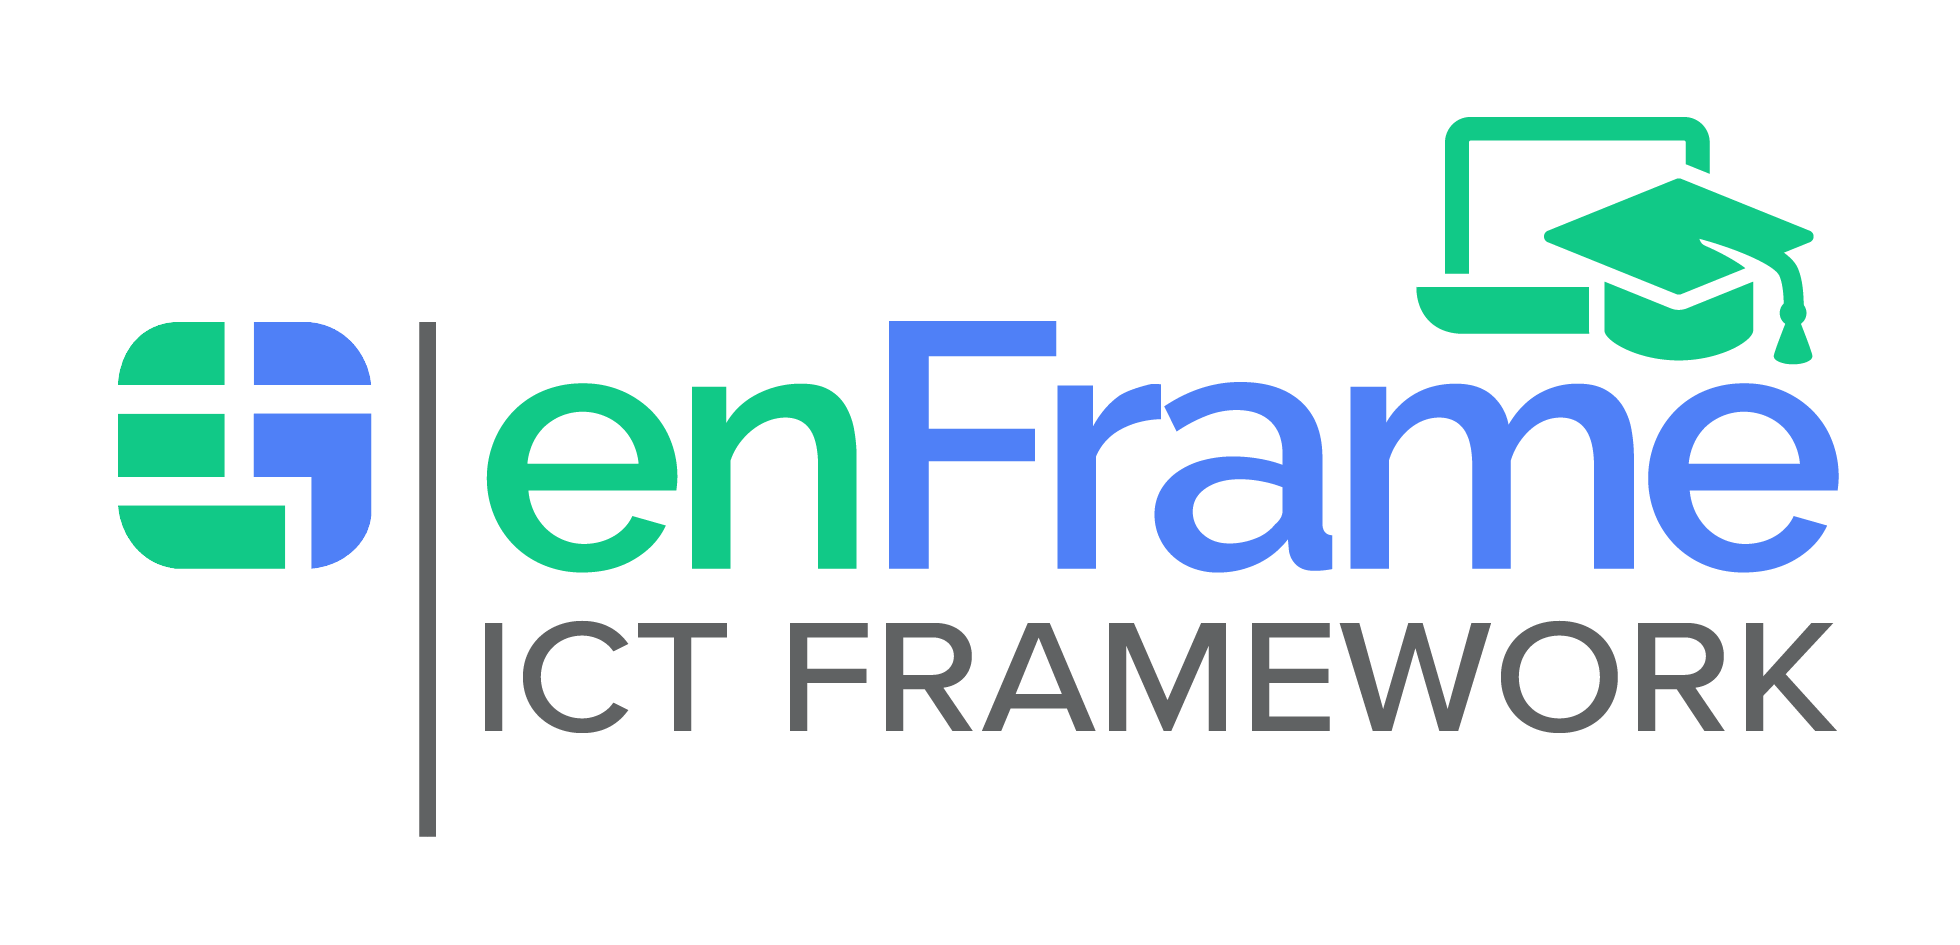 enFrame ICT Framework Logo no cic - Full colour v0622